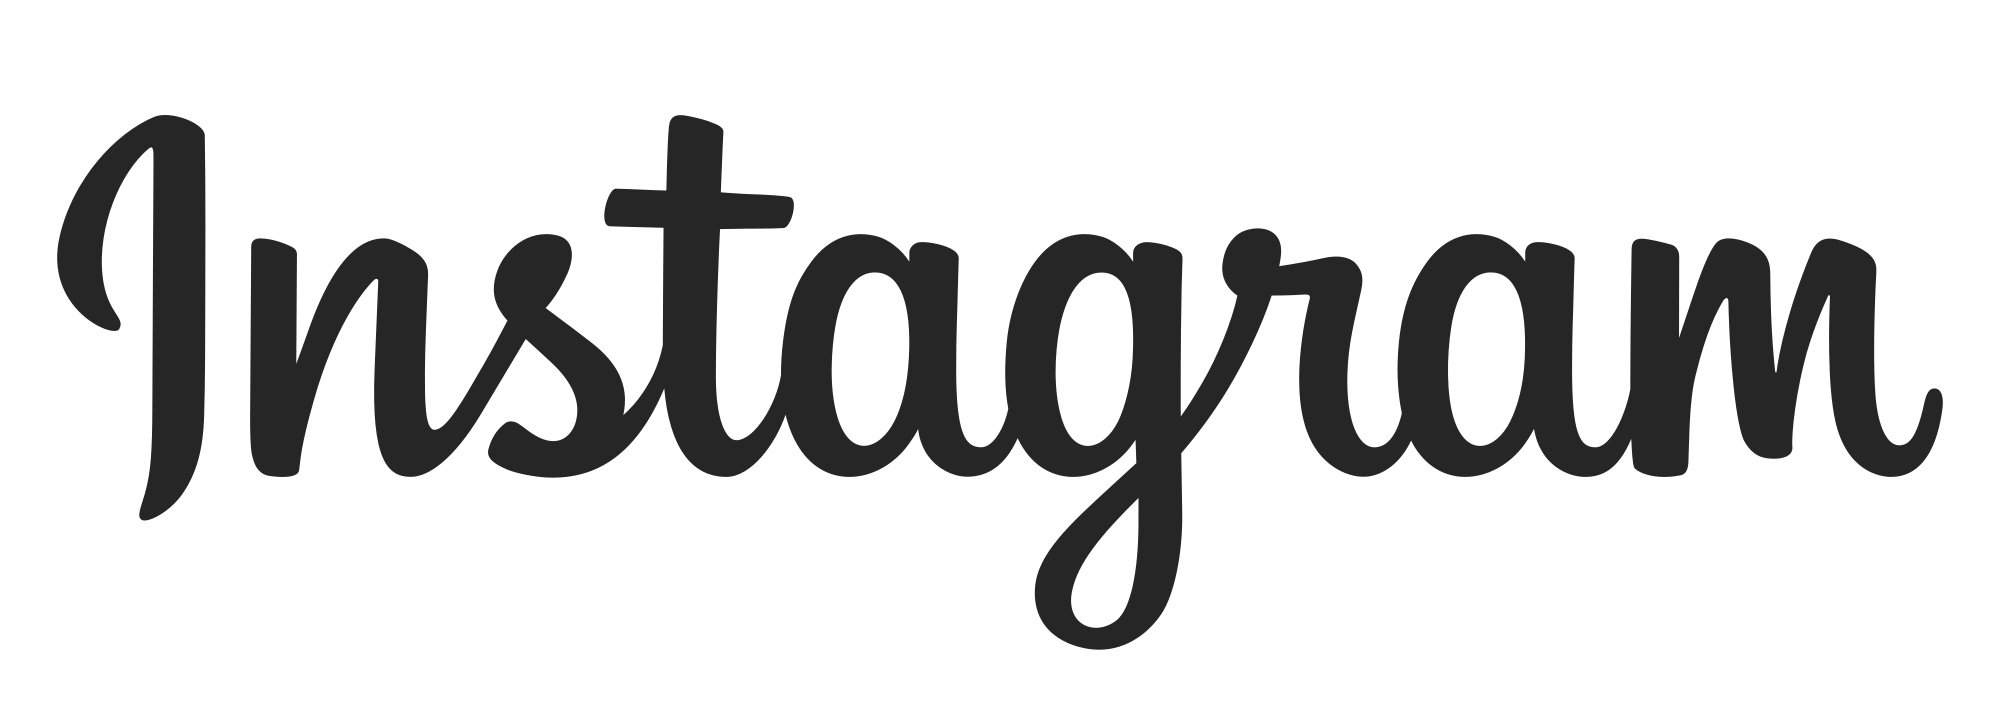 Le réseau social de Meta, Instagram lance les appels vidéo avec des avatars